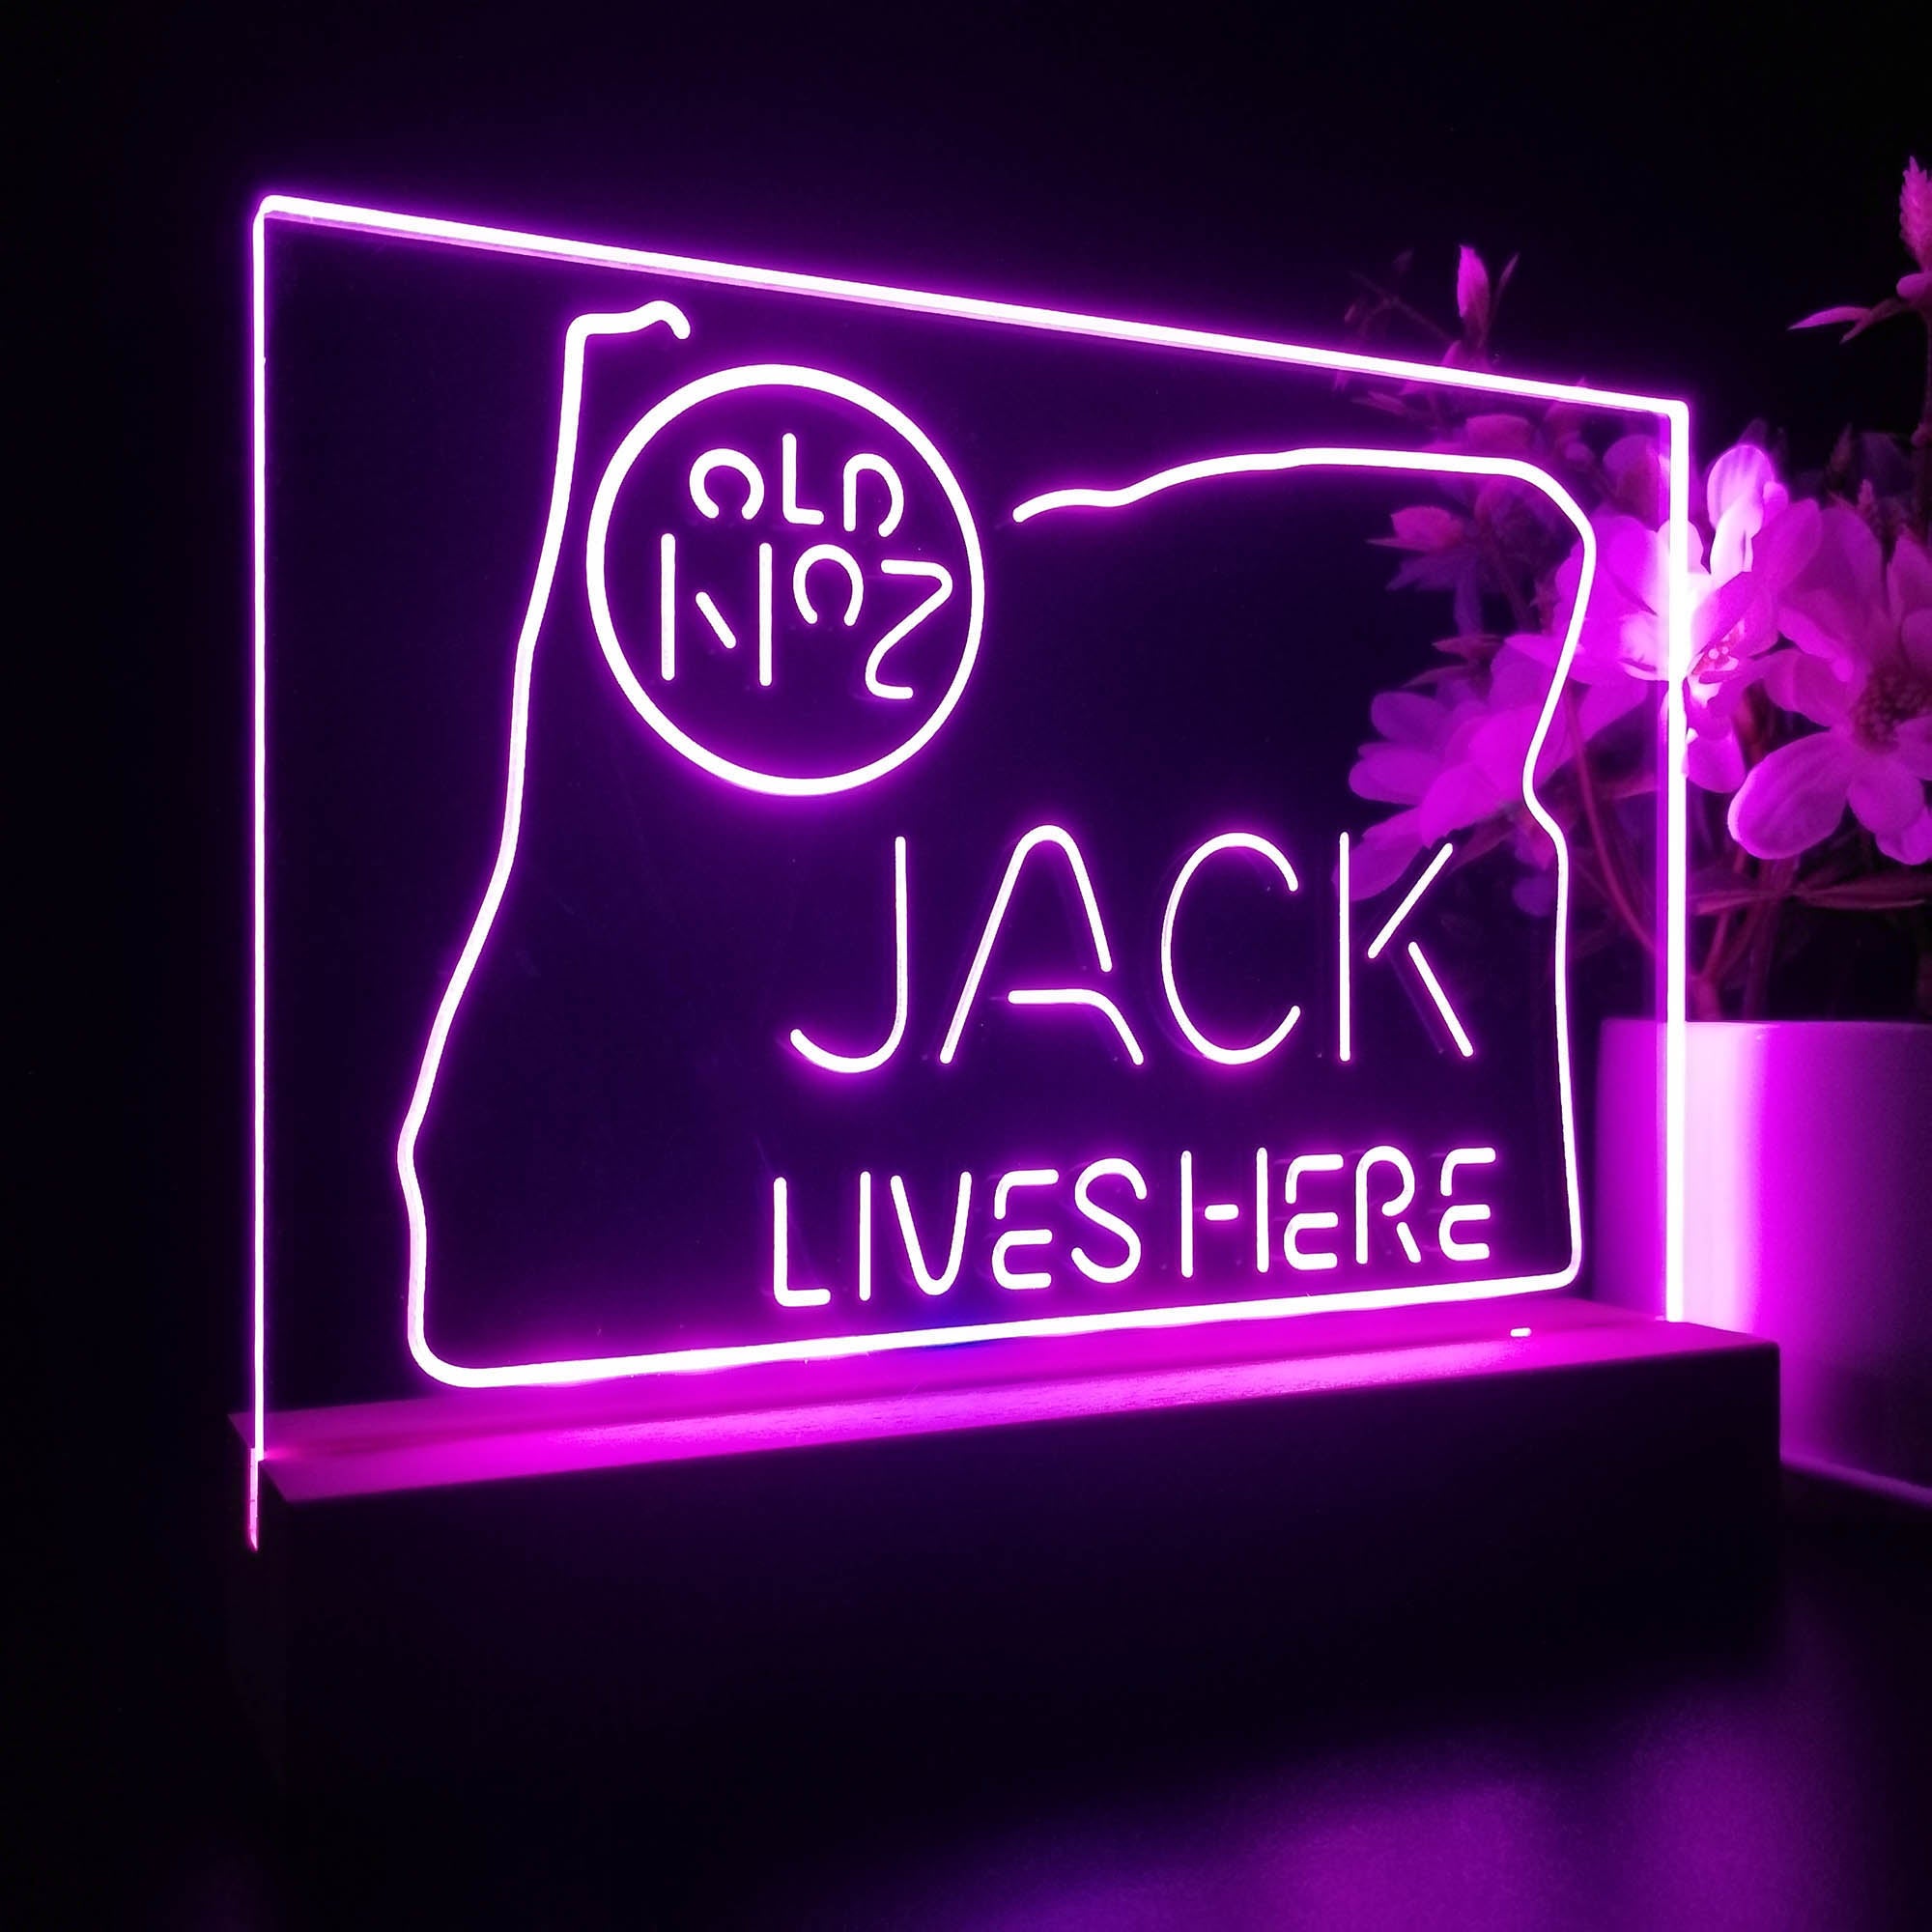 Oregon Jack Lives Here Neon Sign Pub Bar Lamp